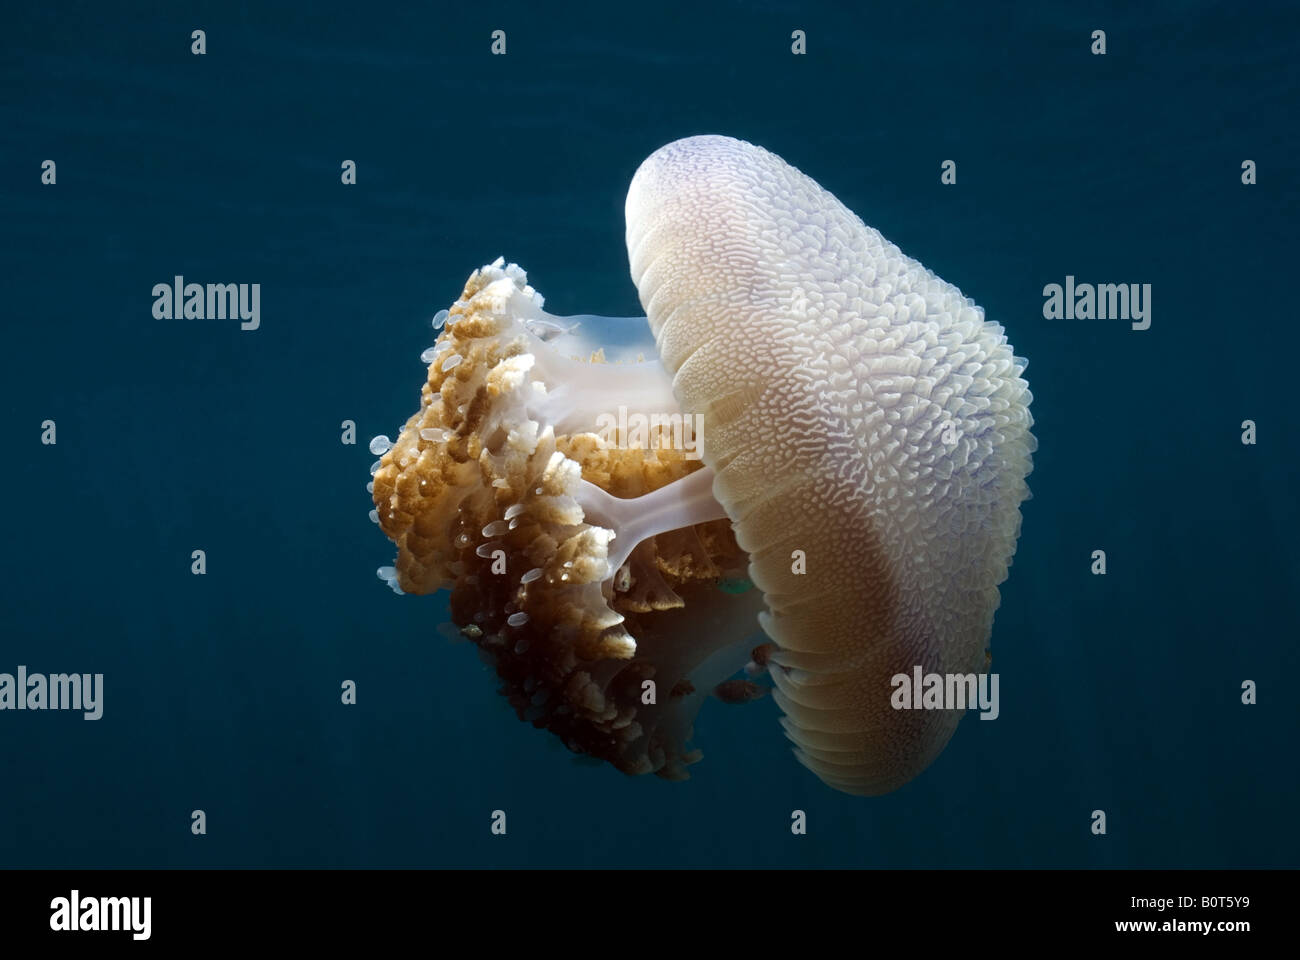 Jellyfish under water Stock Photo